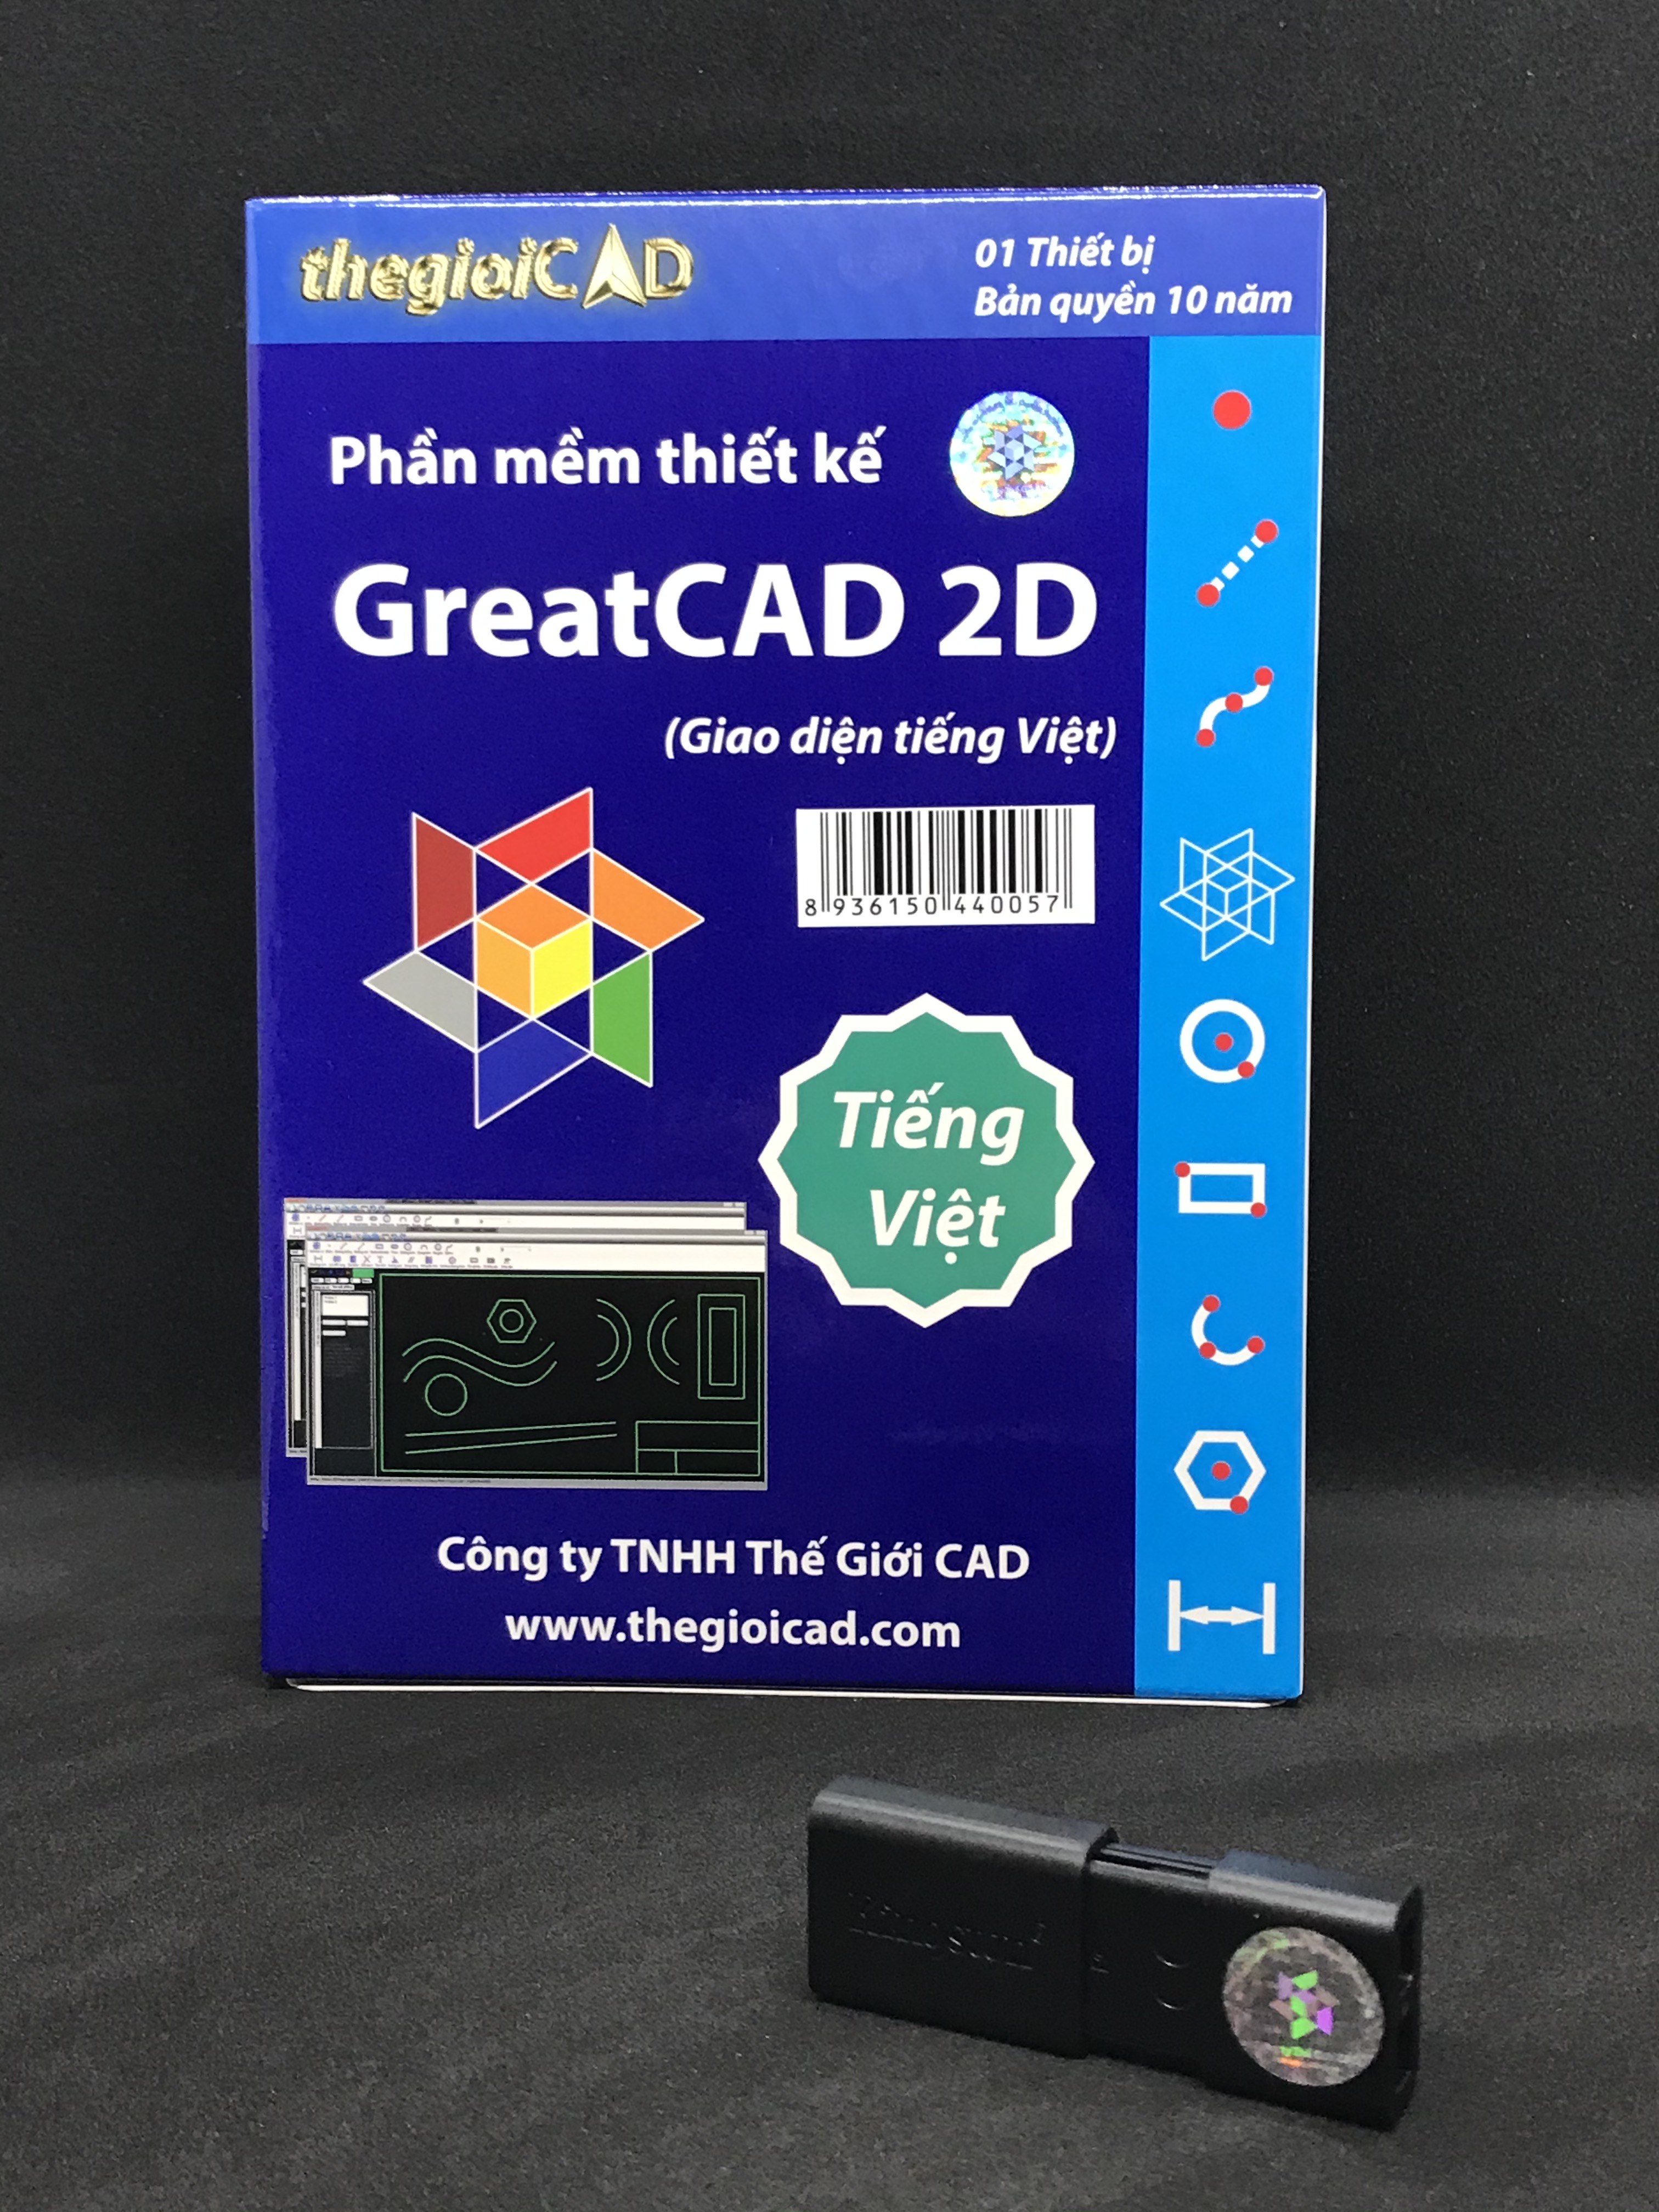 Phần mềm thiết kế GreatCAD 2D phiên bản tiêu chuẩn – Giao diện tiếng Việt (USB/2020) - Hàng chính hãng